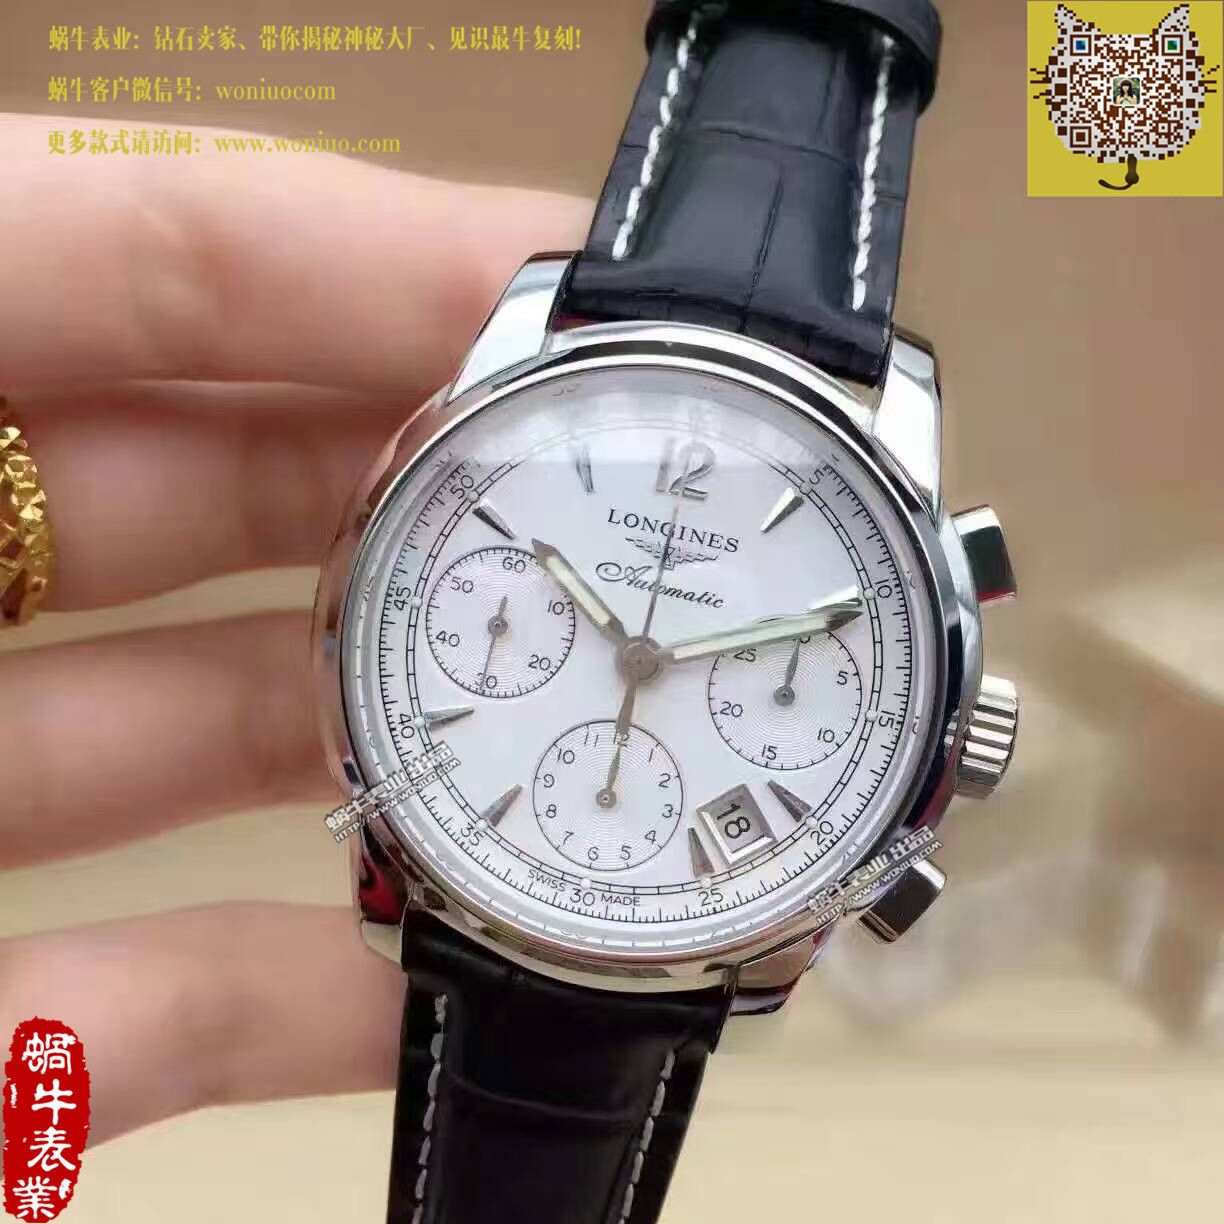 【TW台湾厂1比1顶级高仿手表】浪琴SAINT-IMIER索伊米亚 系列L2.753.4.72.6腕表 / L085